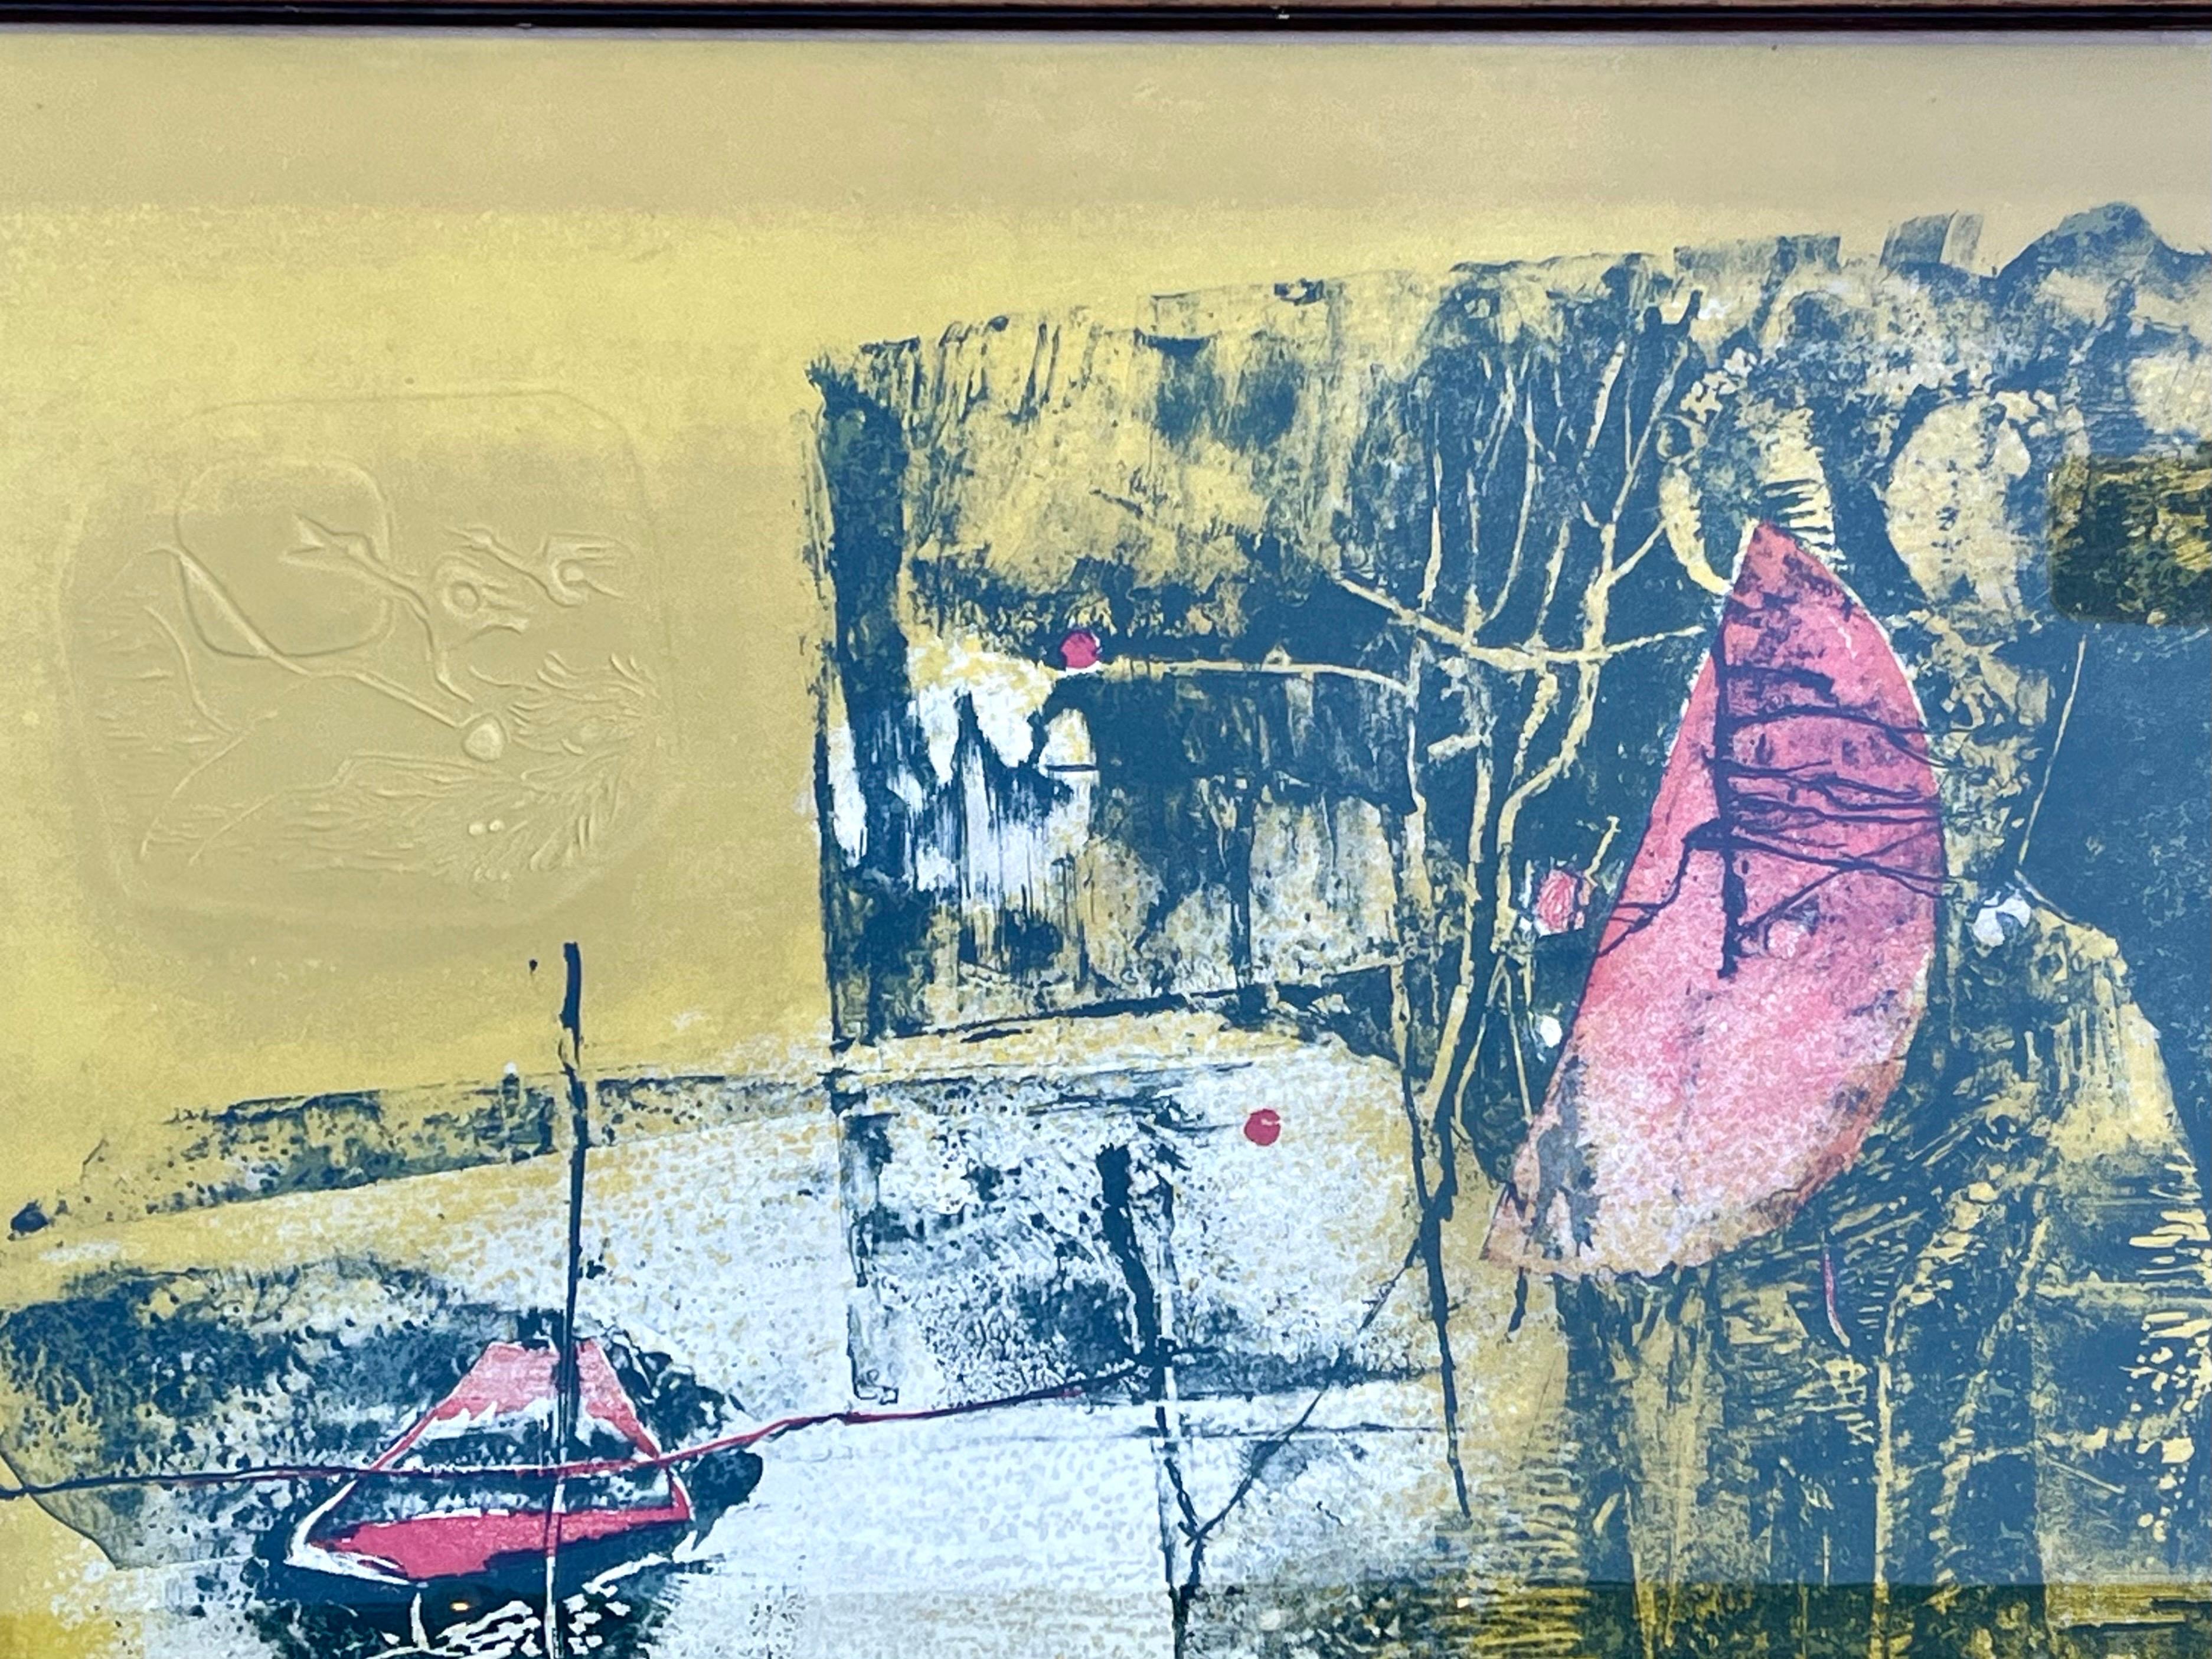 Litografía de mediados del siglo XX del artista vietnamita/francés Hoi Lebadang (1921-2015), firmada y numerada. Los colores empleados, tonos de rojo, blanco y carbón sobre un amarillo dorado, significan calidez y riqueza. La composición abstracta